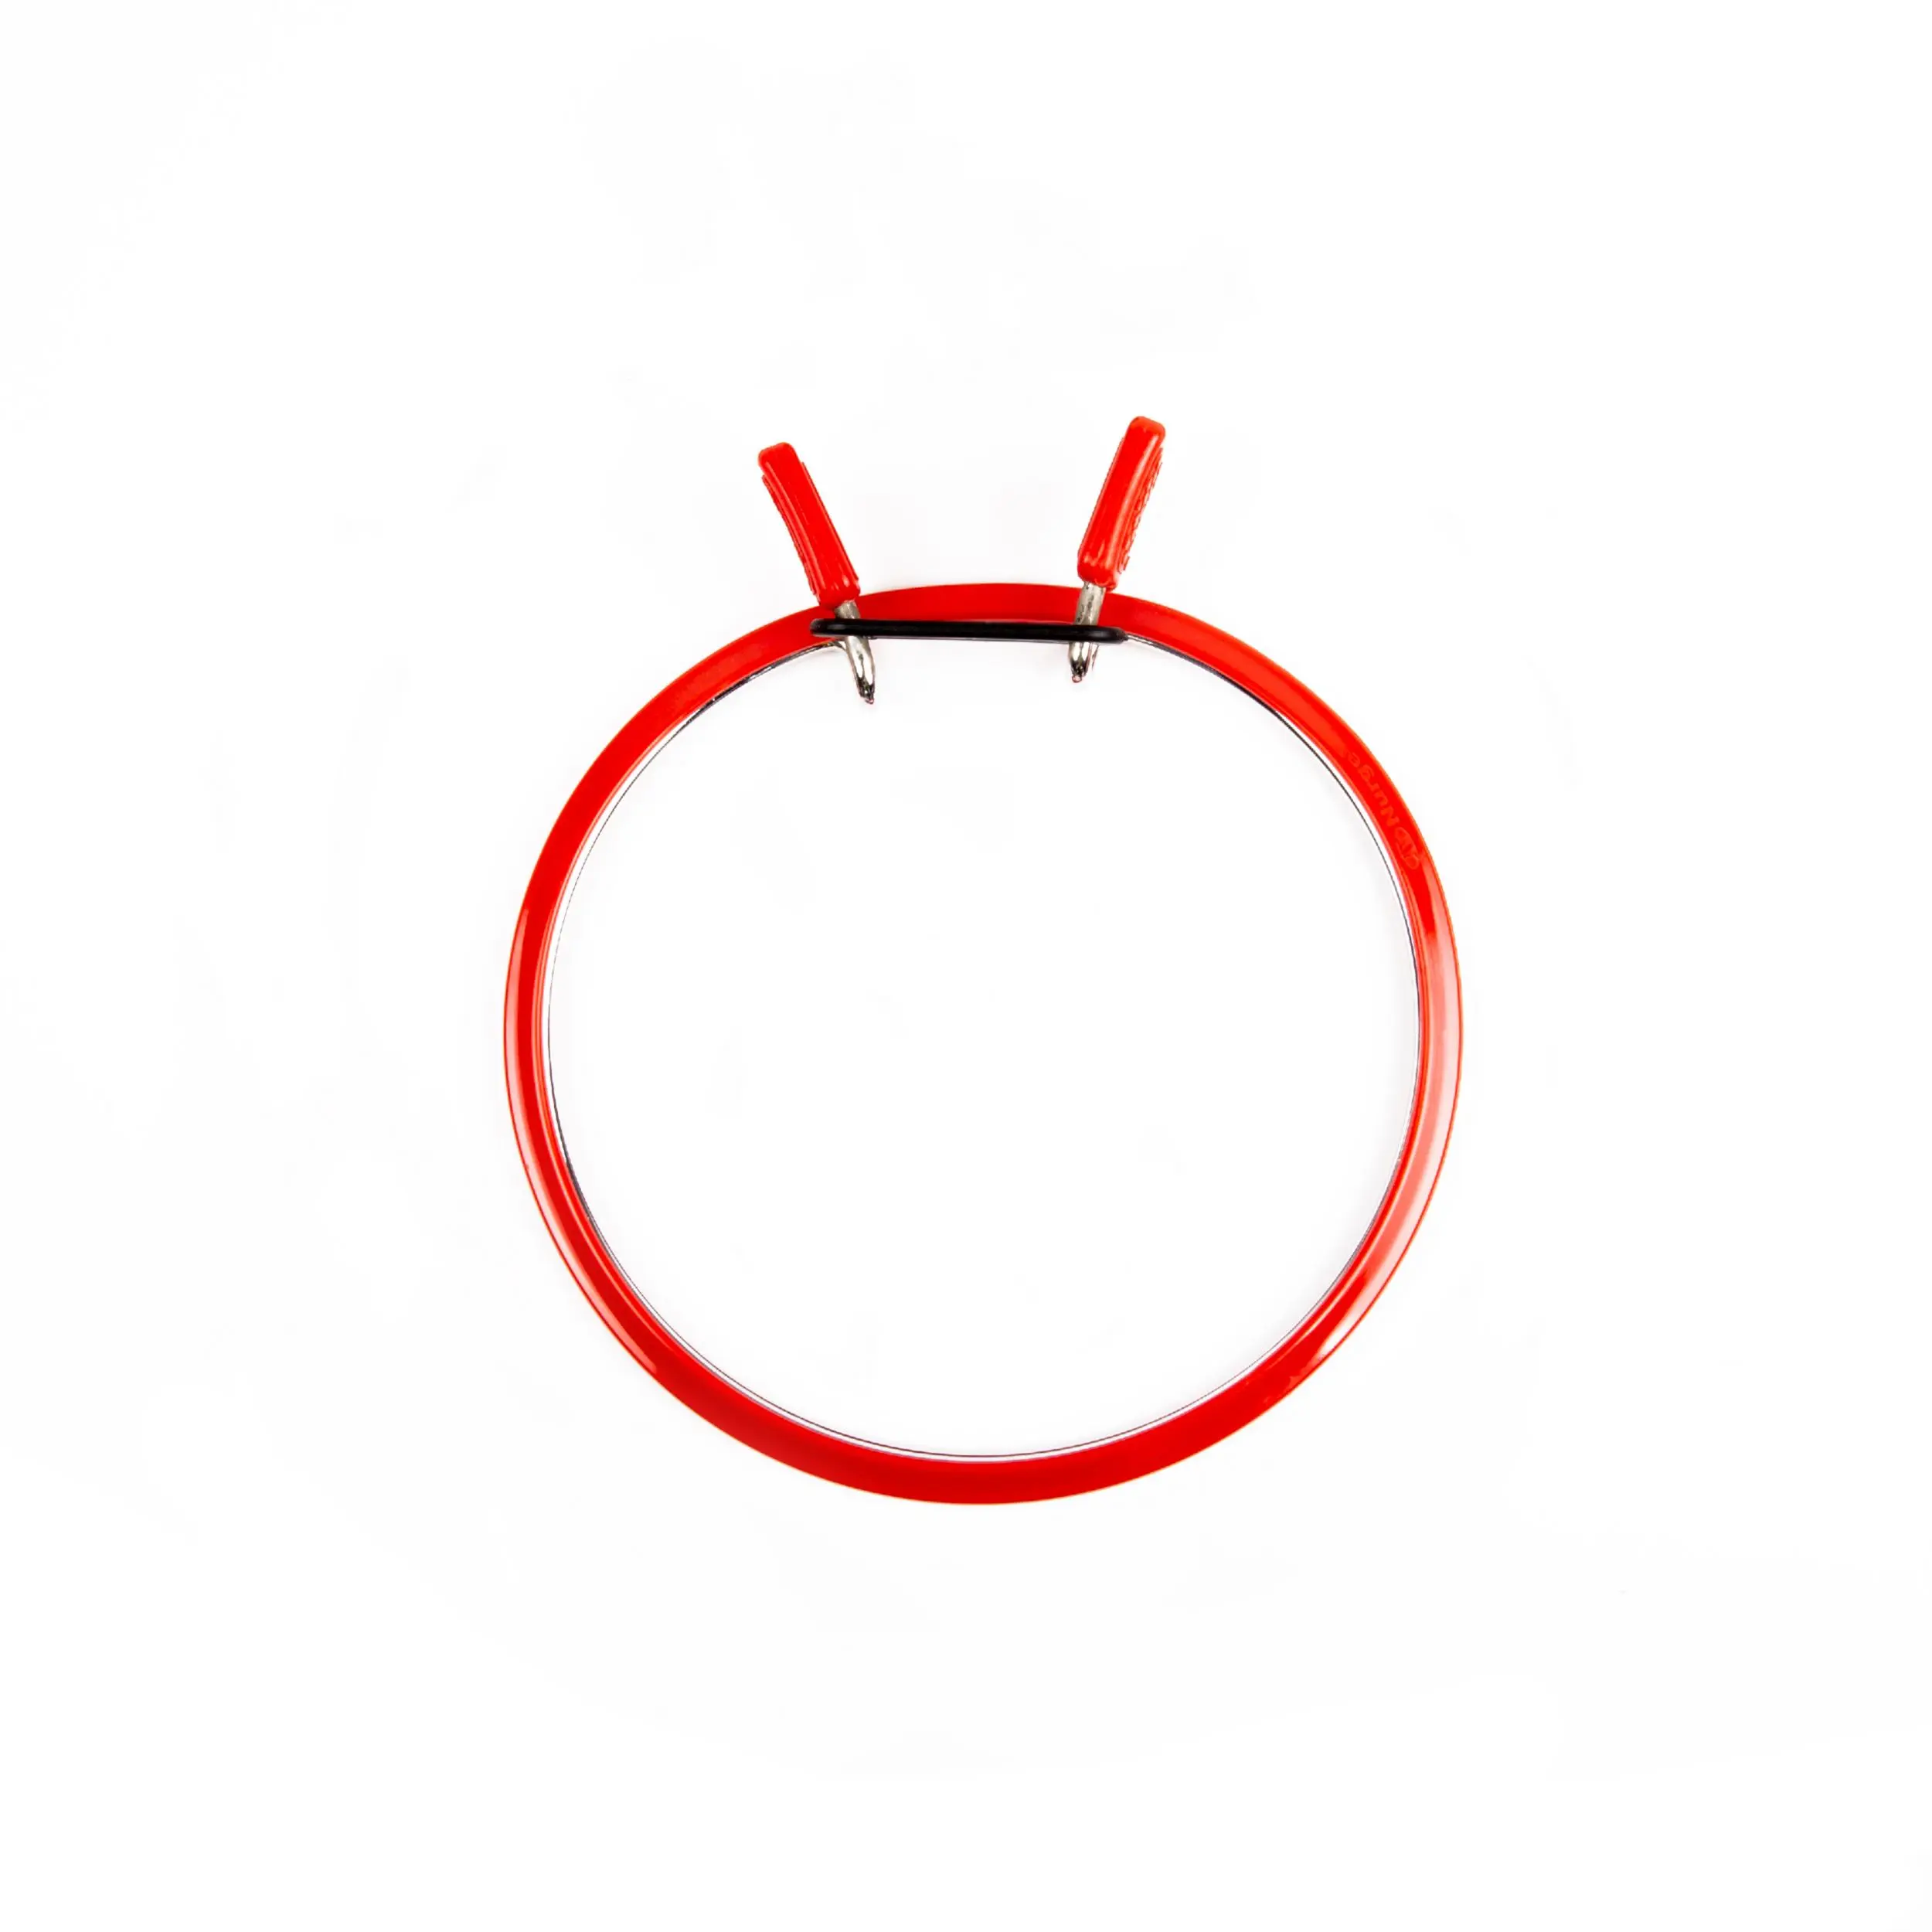 160-2/червоні Пяльці Nurge пружинні для вишивання та штопки, висота обідка 5мм, діаметр 126мм